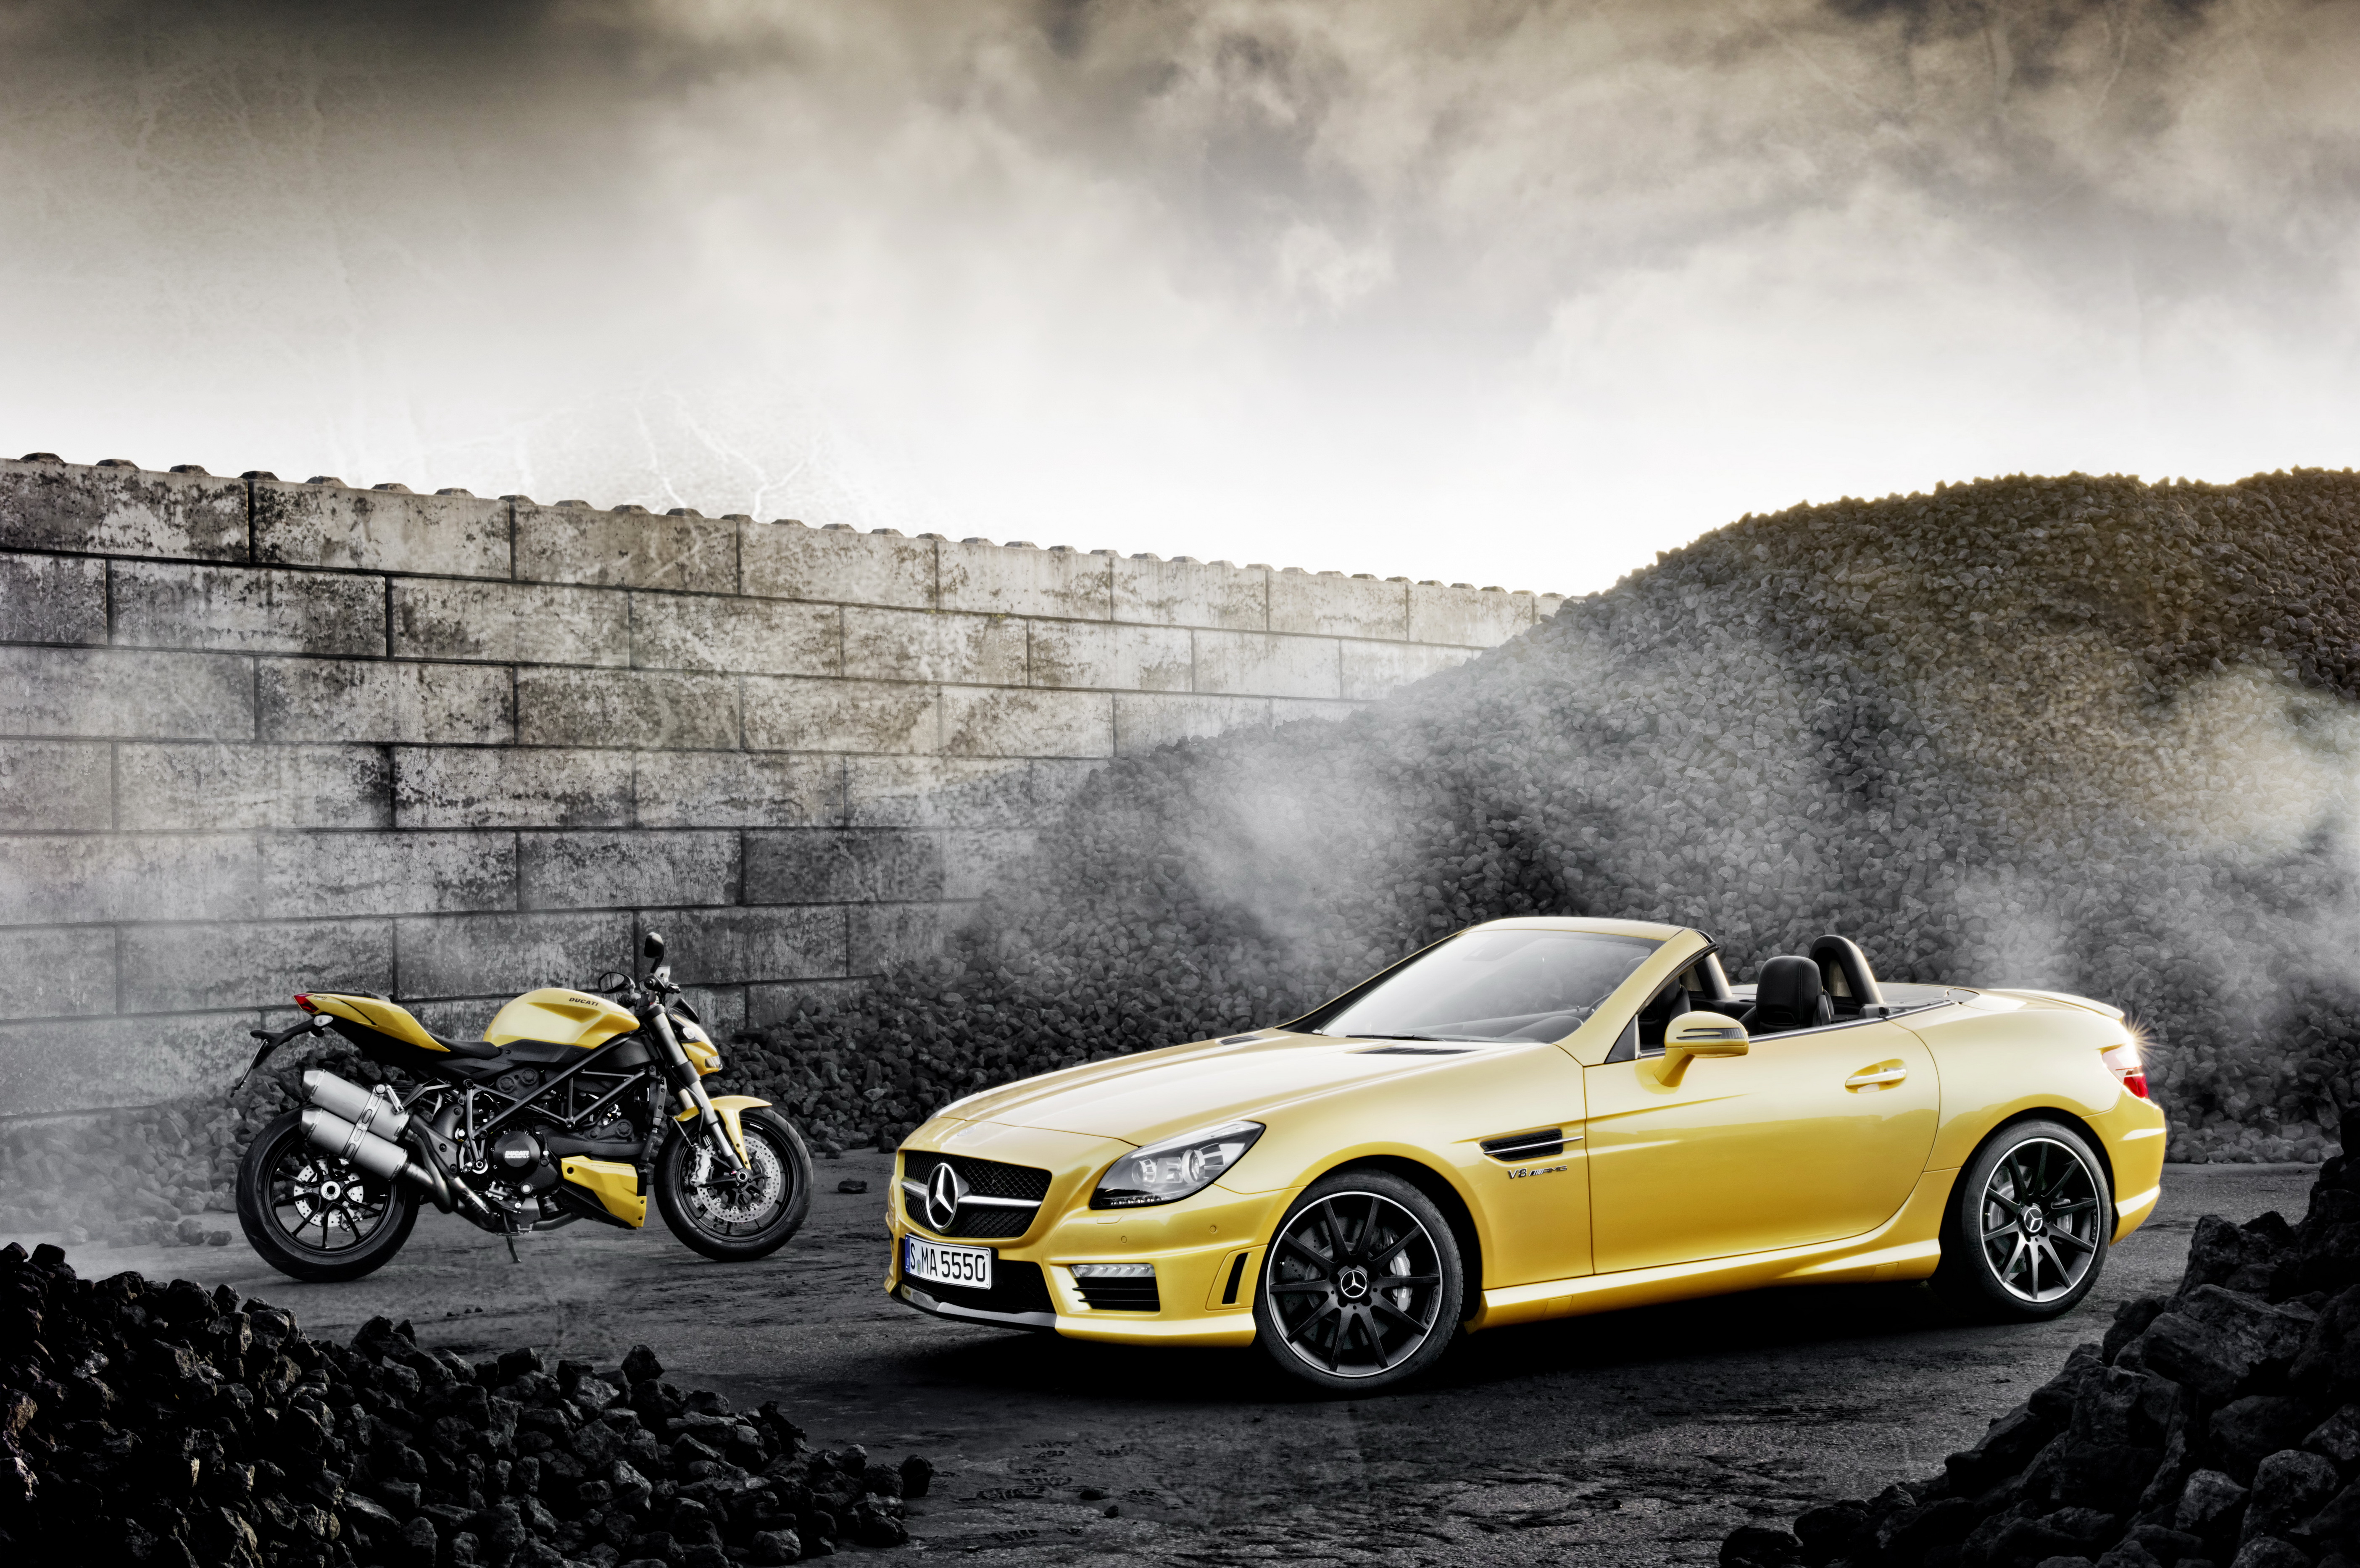 Moto auto. Мерседес Бенц АМГ. Желтый Мерседес кабриолет. Mercedes AMG кабриолет желтый. Mercedes-Benz SLS AMG gt Roadster.